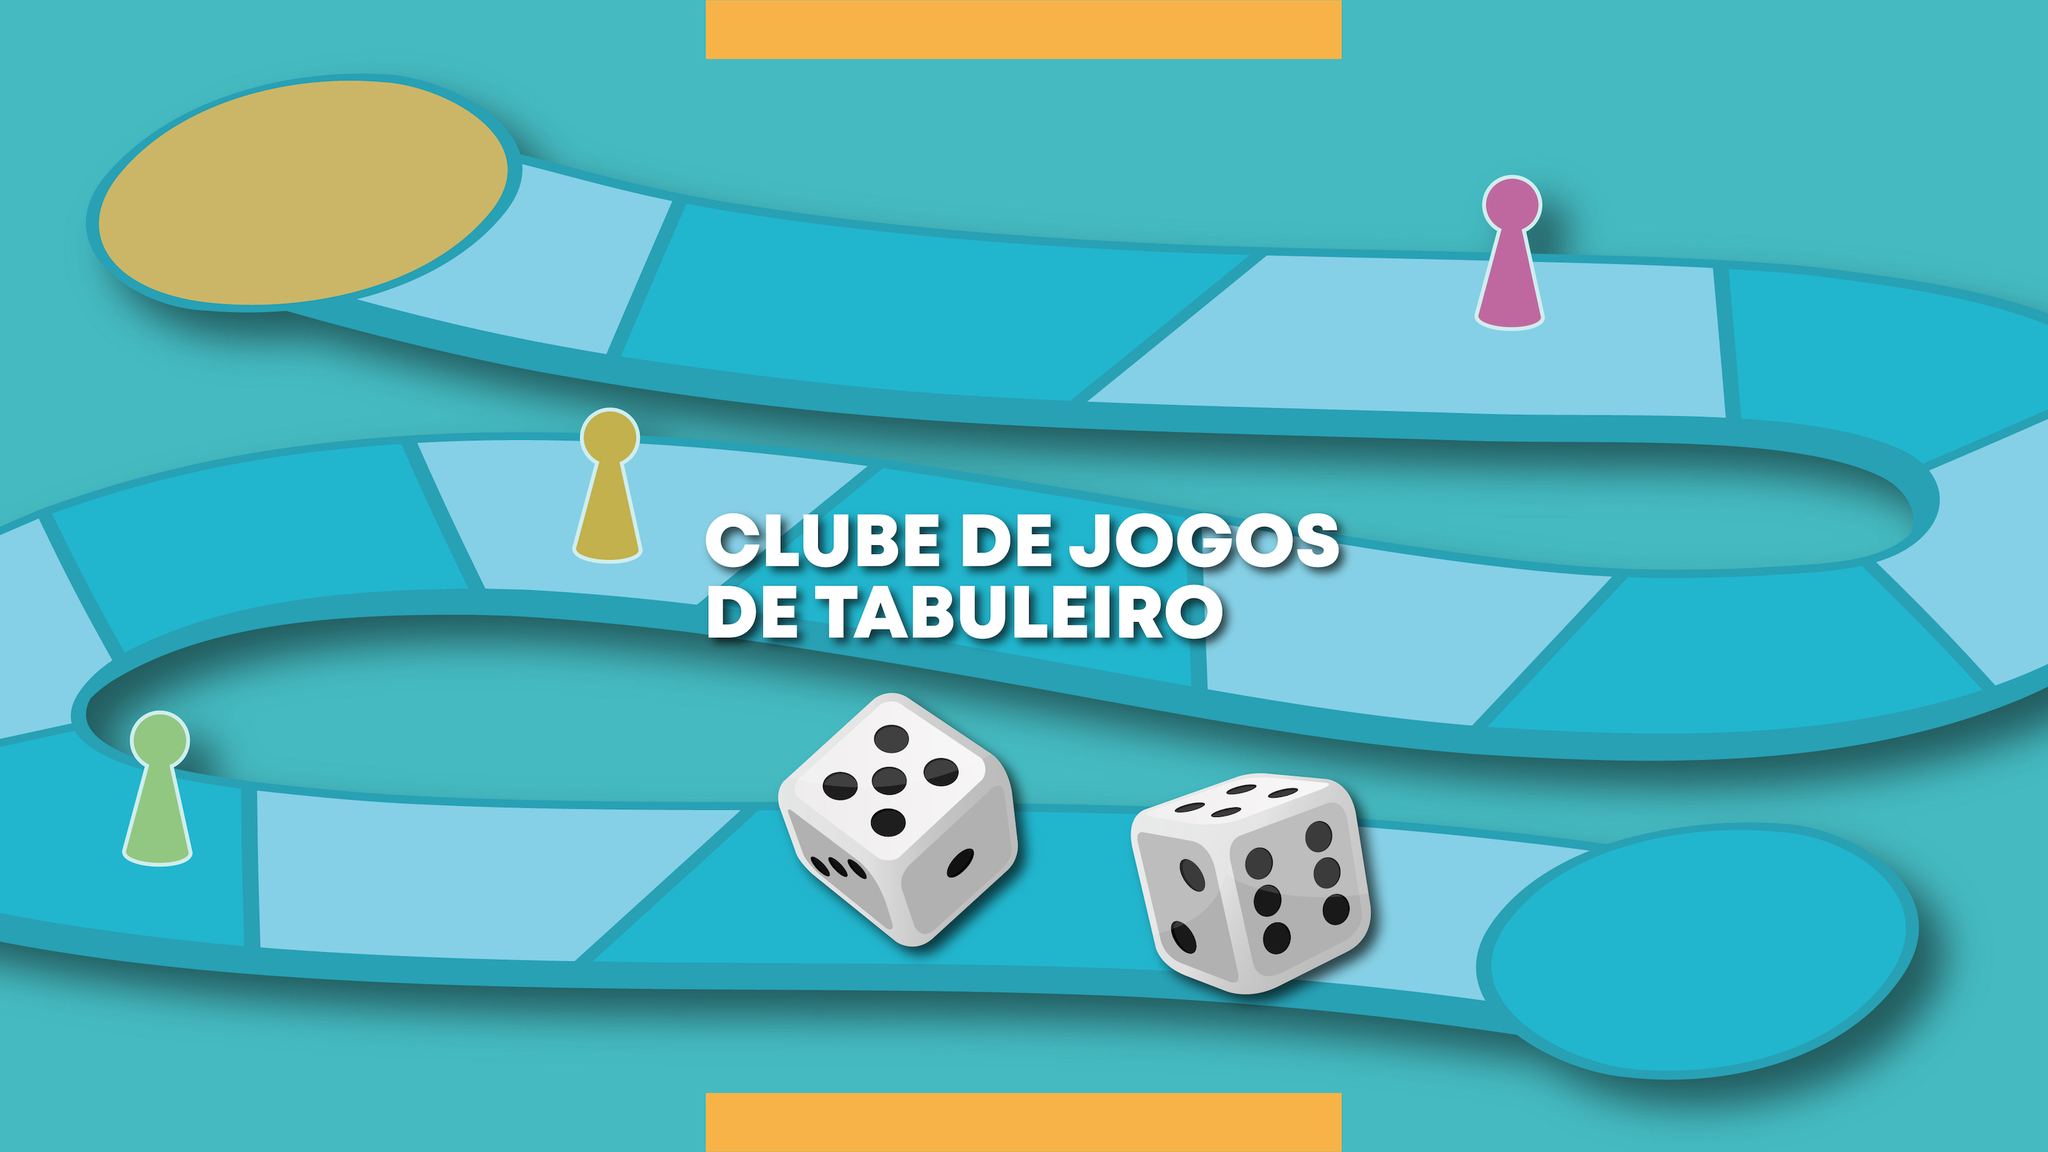 CLUBE DE JOGOS DE TABULEIRO